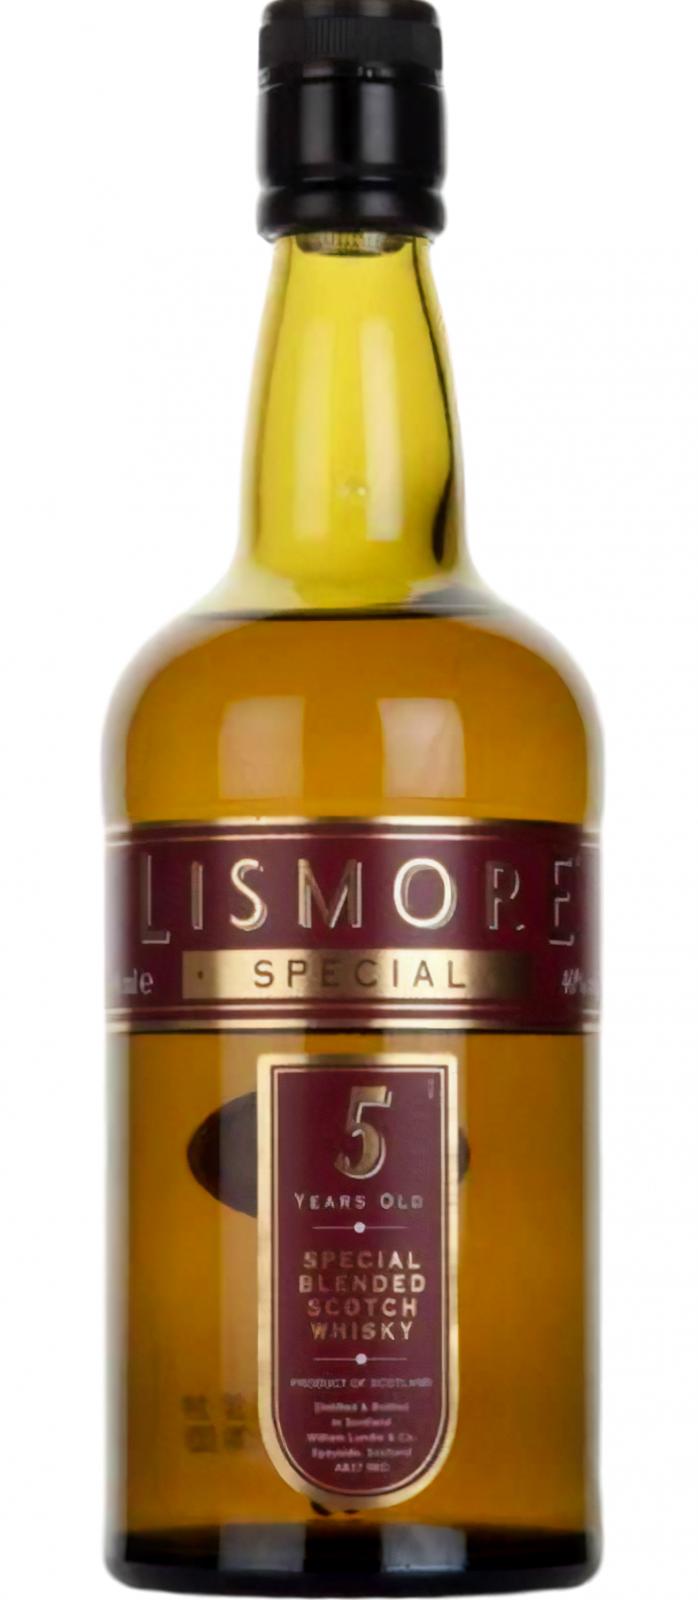 Lismore 5yo Special Reserve 40% 700ml